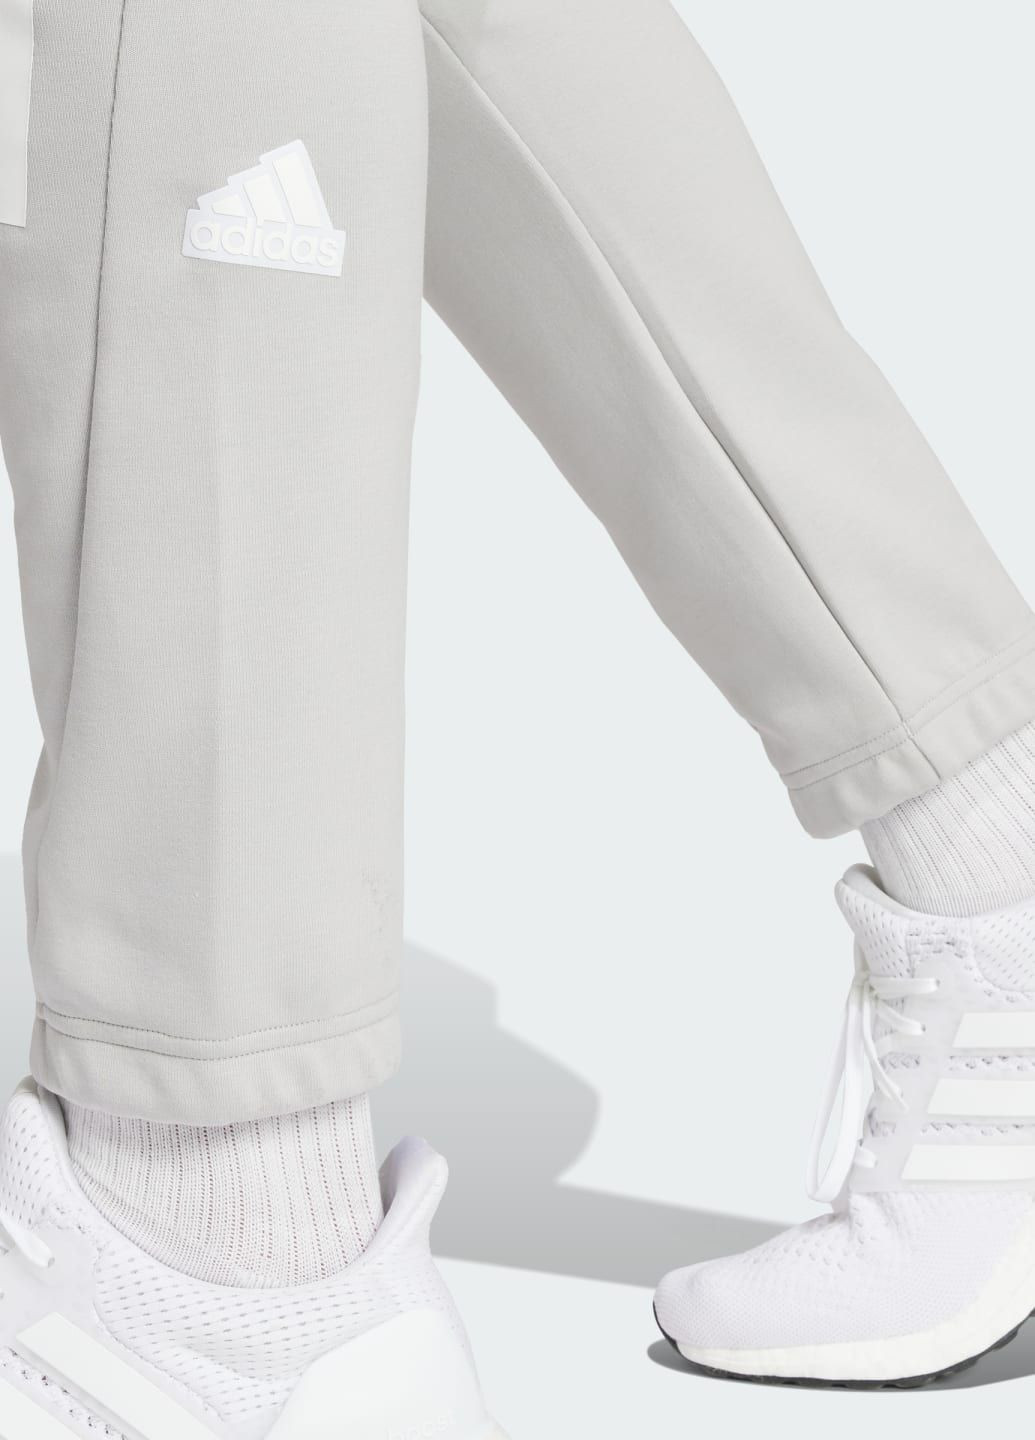 Серые спортивные демисезонные брюки adidas